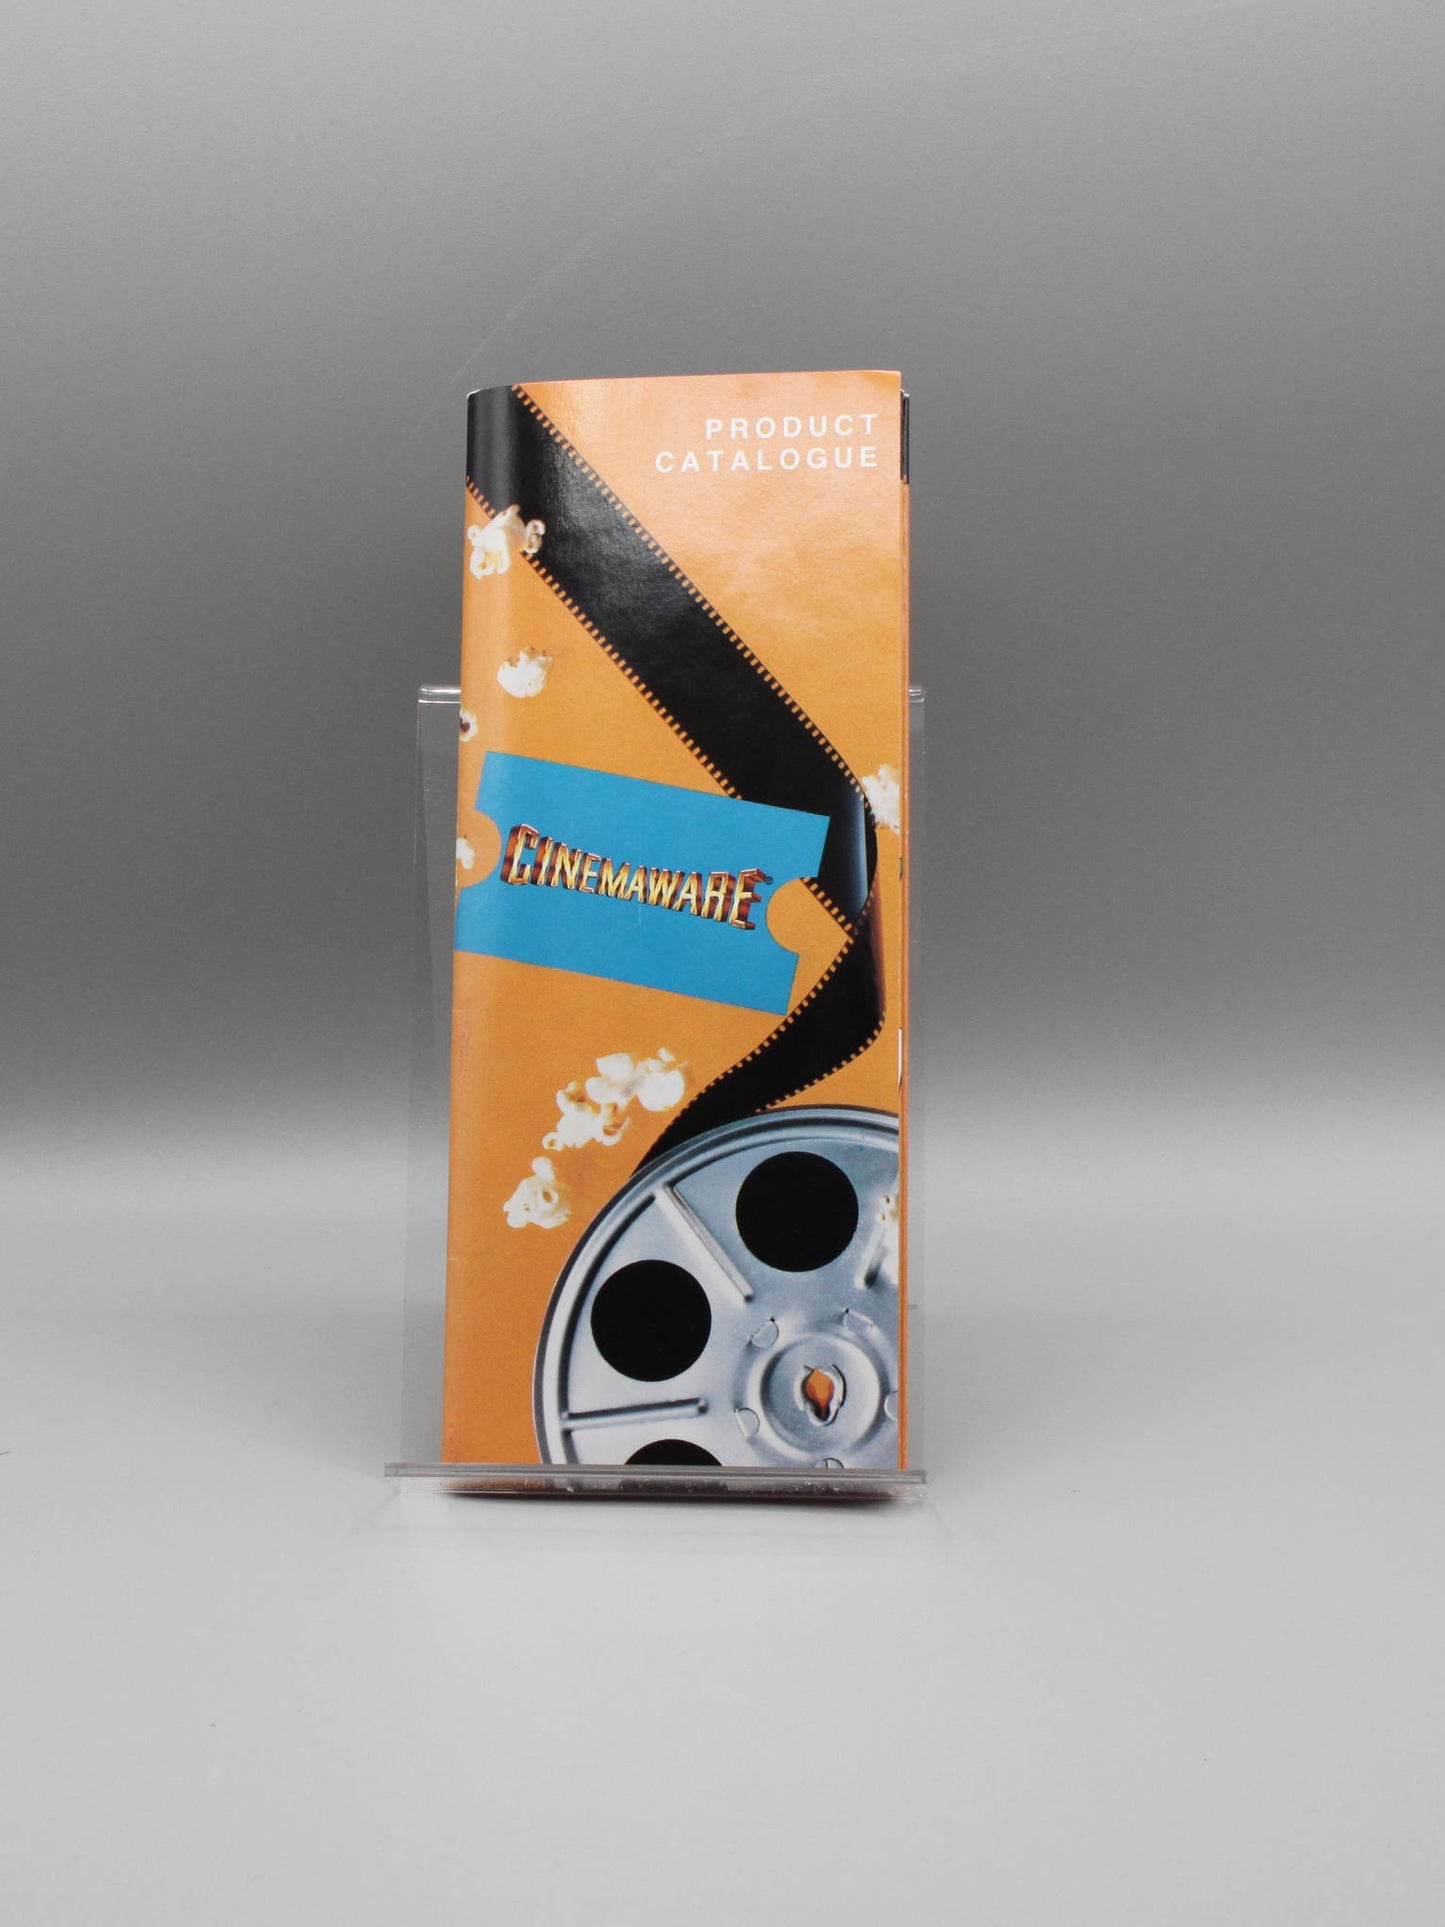 Rocket Ranger by Cinemaware Box & Manual - Disks are bad